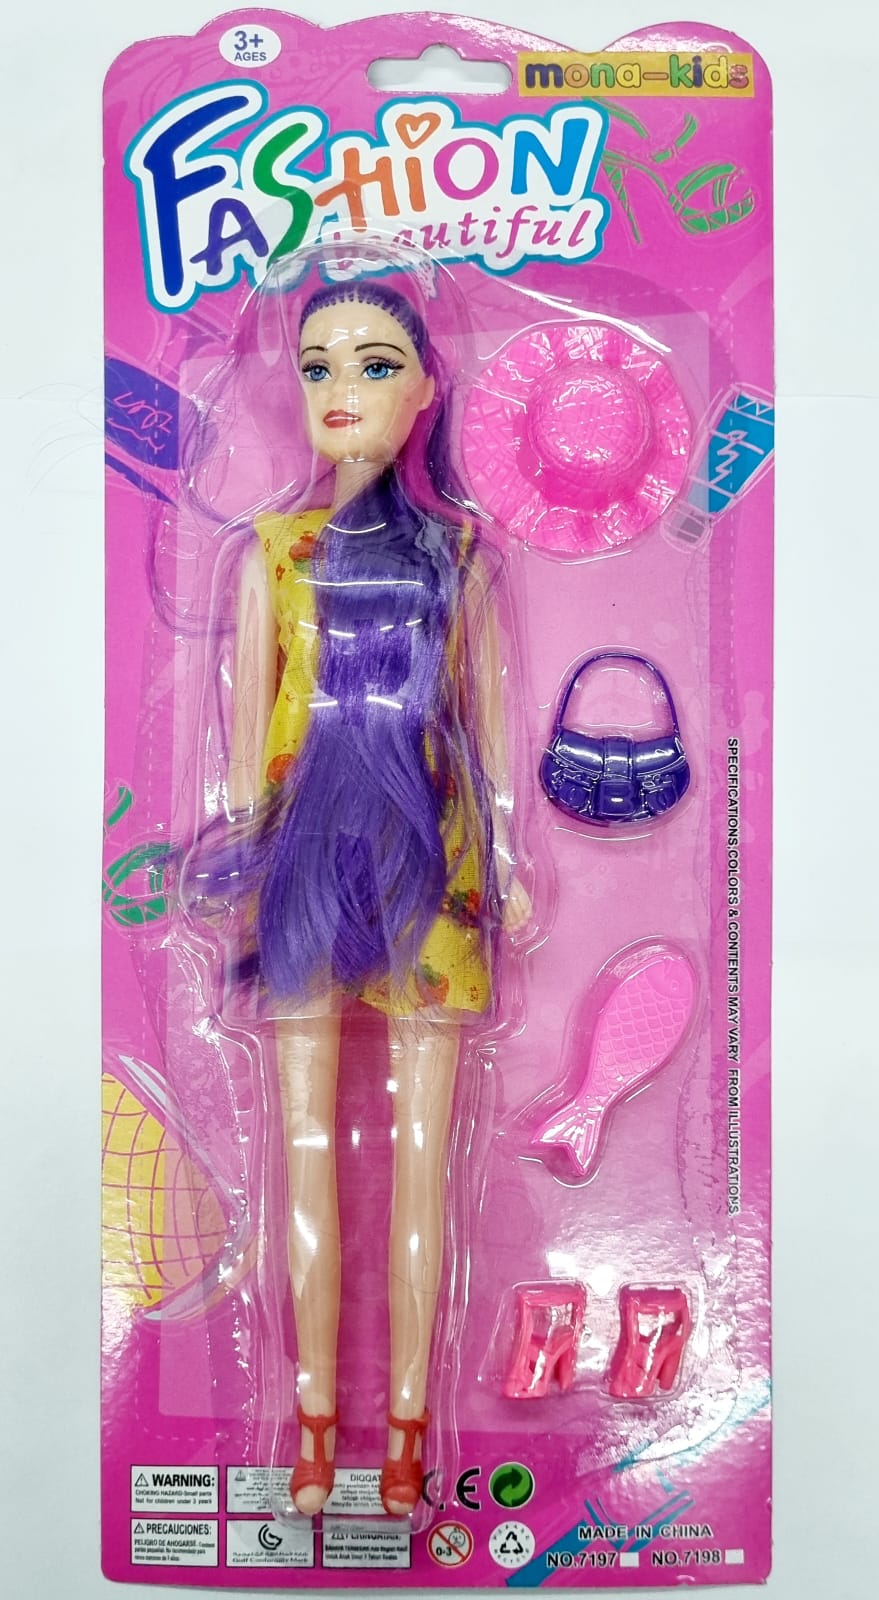 YYID Roupas e acessórios para bonecas Barbie, bonecas de 29 cm, 26